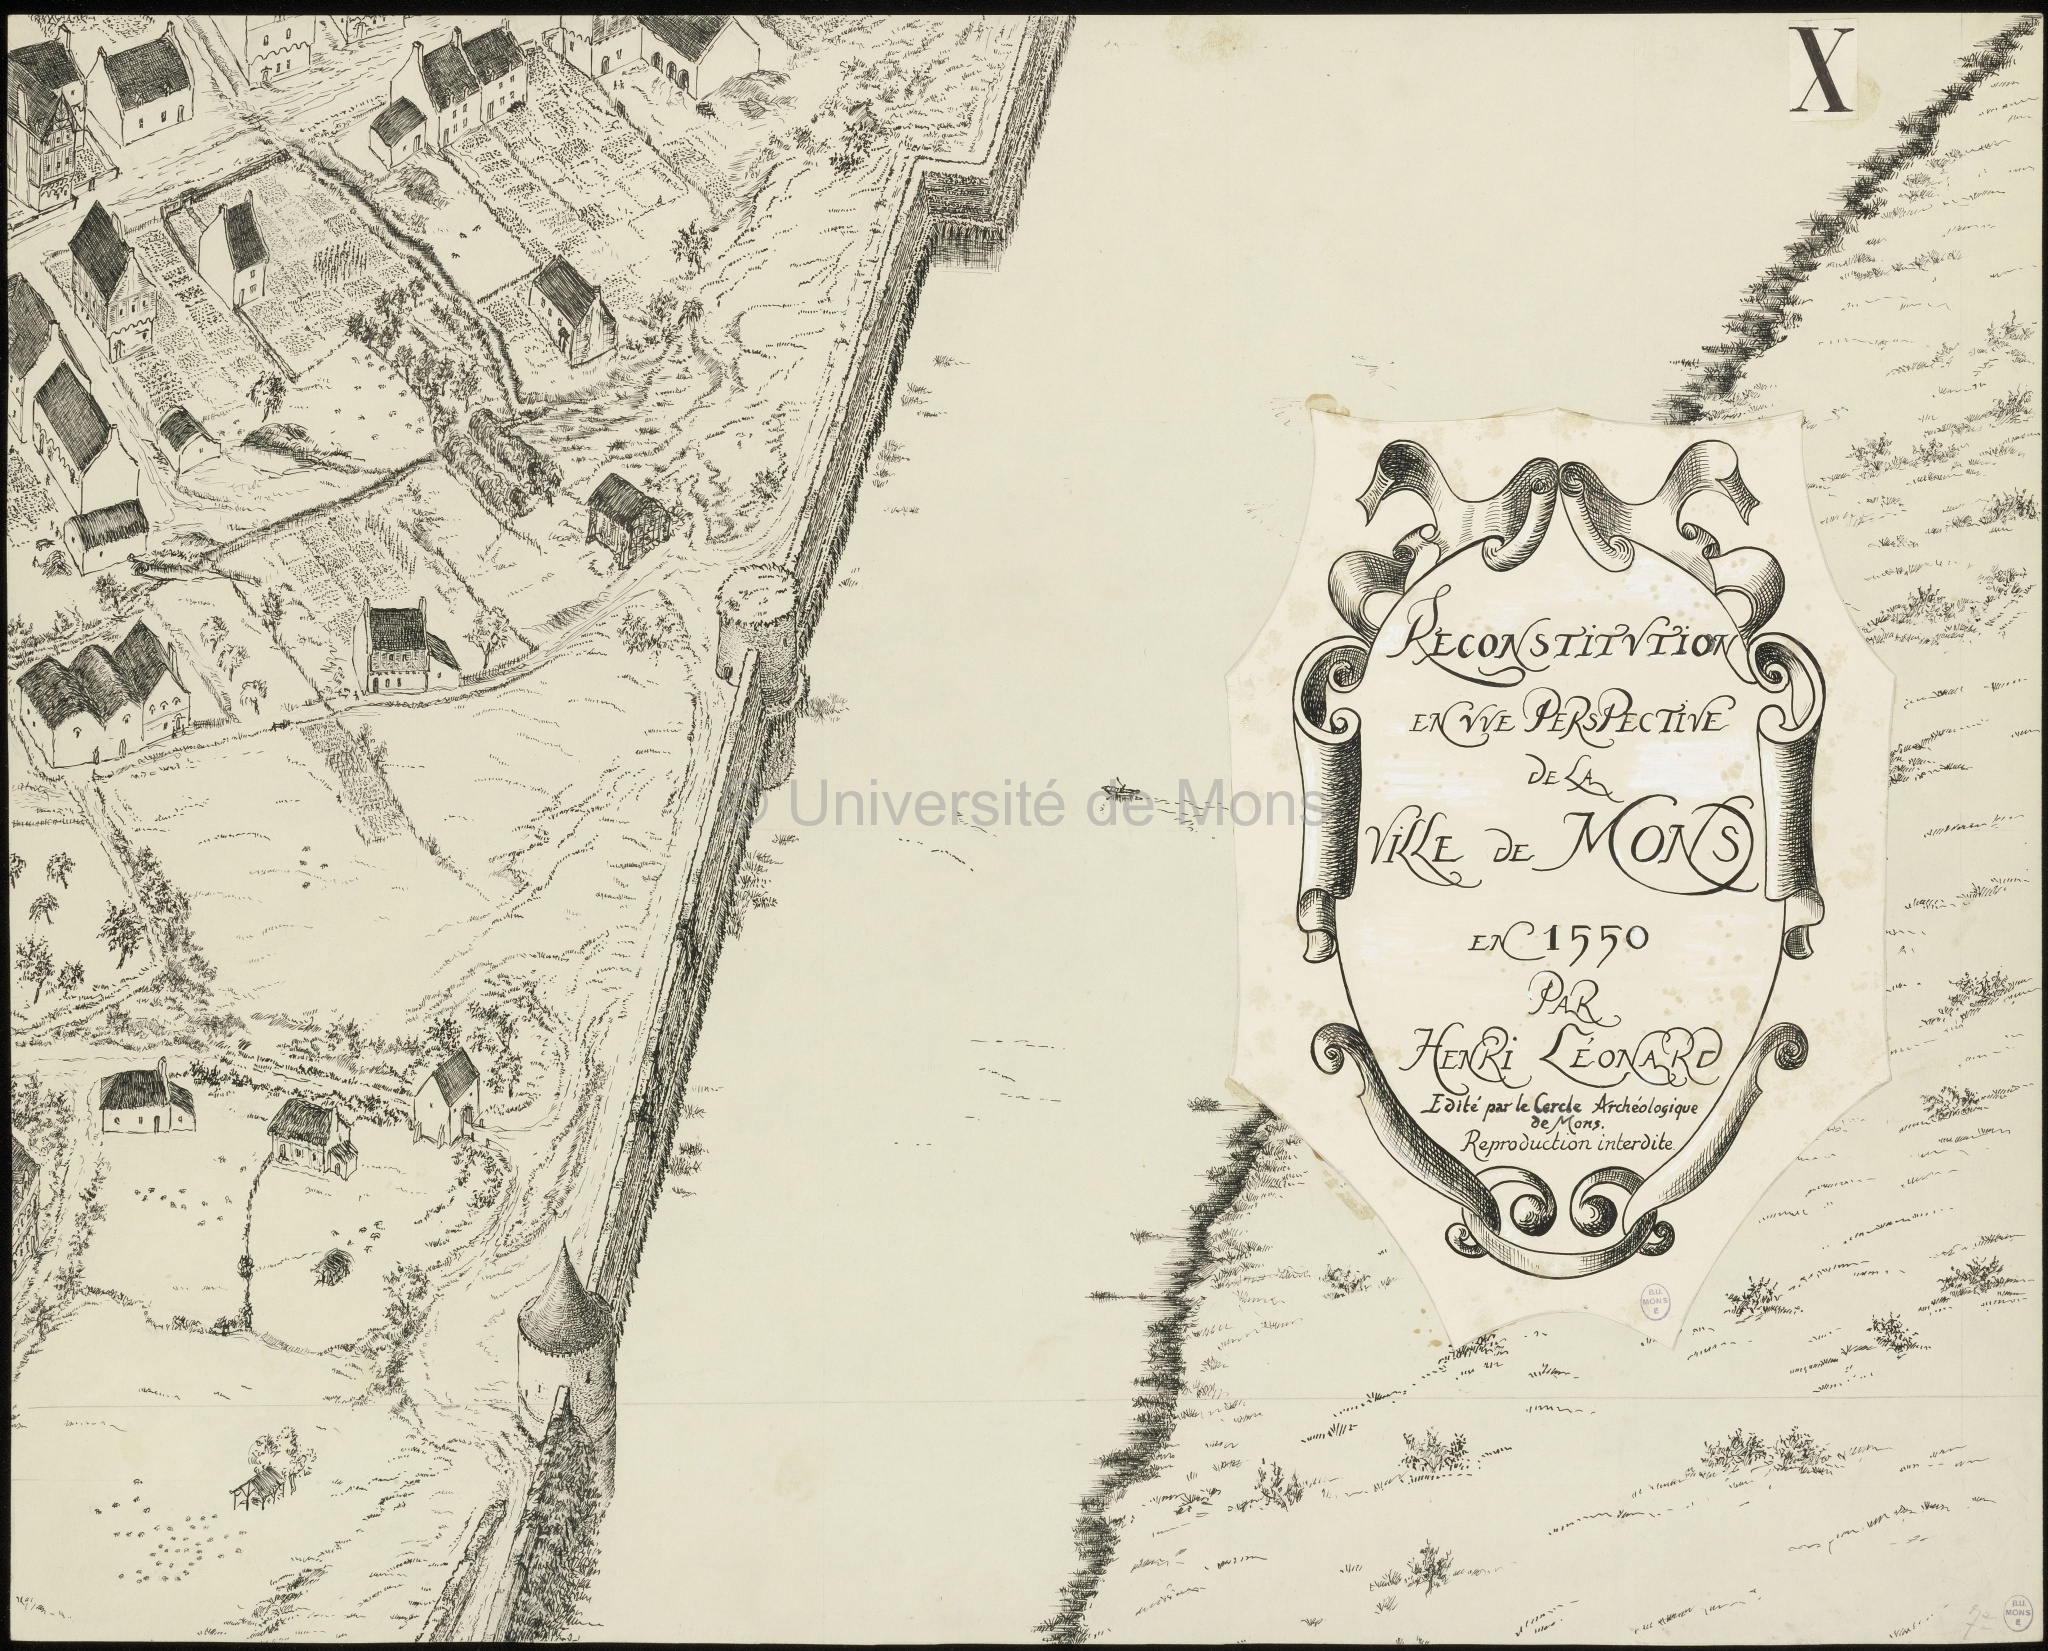 Reconstitution en vue perspective de la ville de Mons en 1550 : planche X